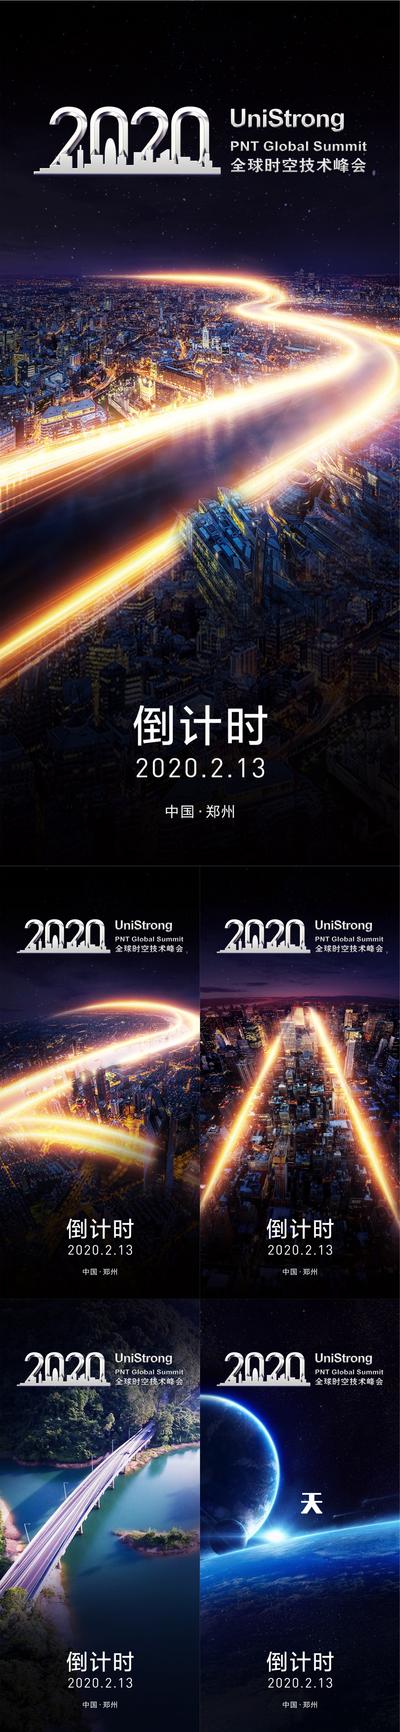 【南门网】海报 倒计时 城市 光影 科技 星球 创意 炫酷